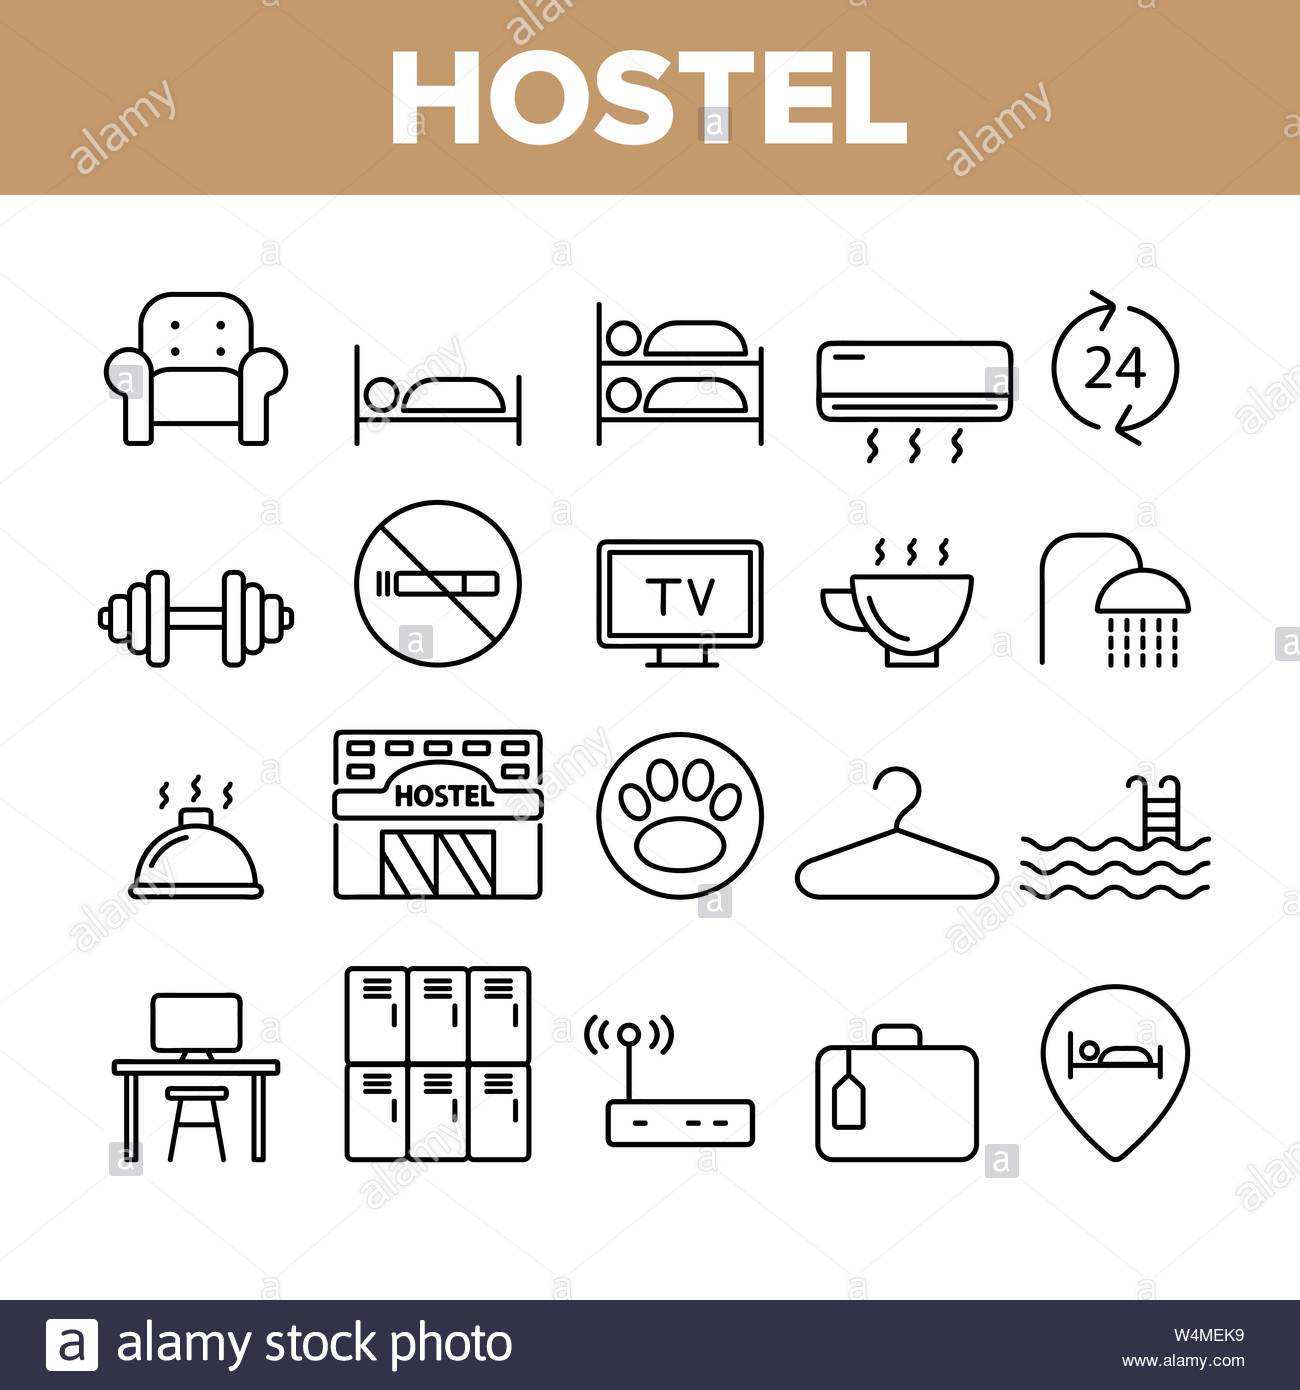 Hostel Touristen Unterkunft Vector Linear Symbole Gesetzt Hostel Einrichtungen Und Dienstleistungen Umrisse Cliparts Hotel Reservierung Piktogramme Sammlung Hosp Stock Vektorgrafik Alamy